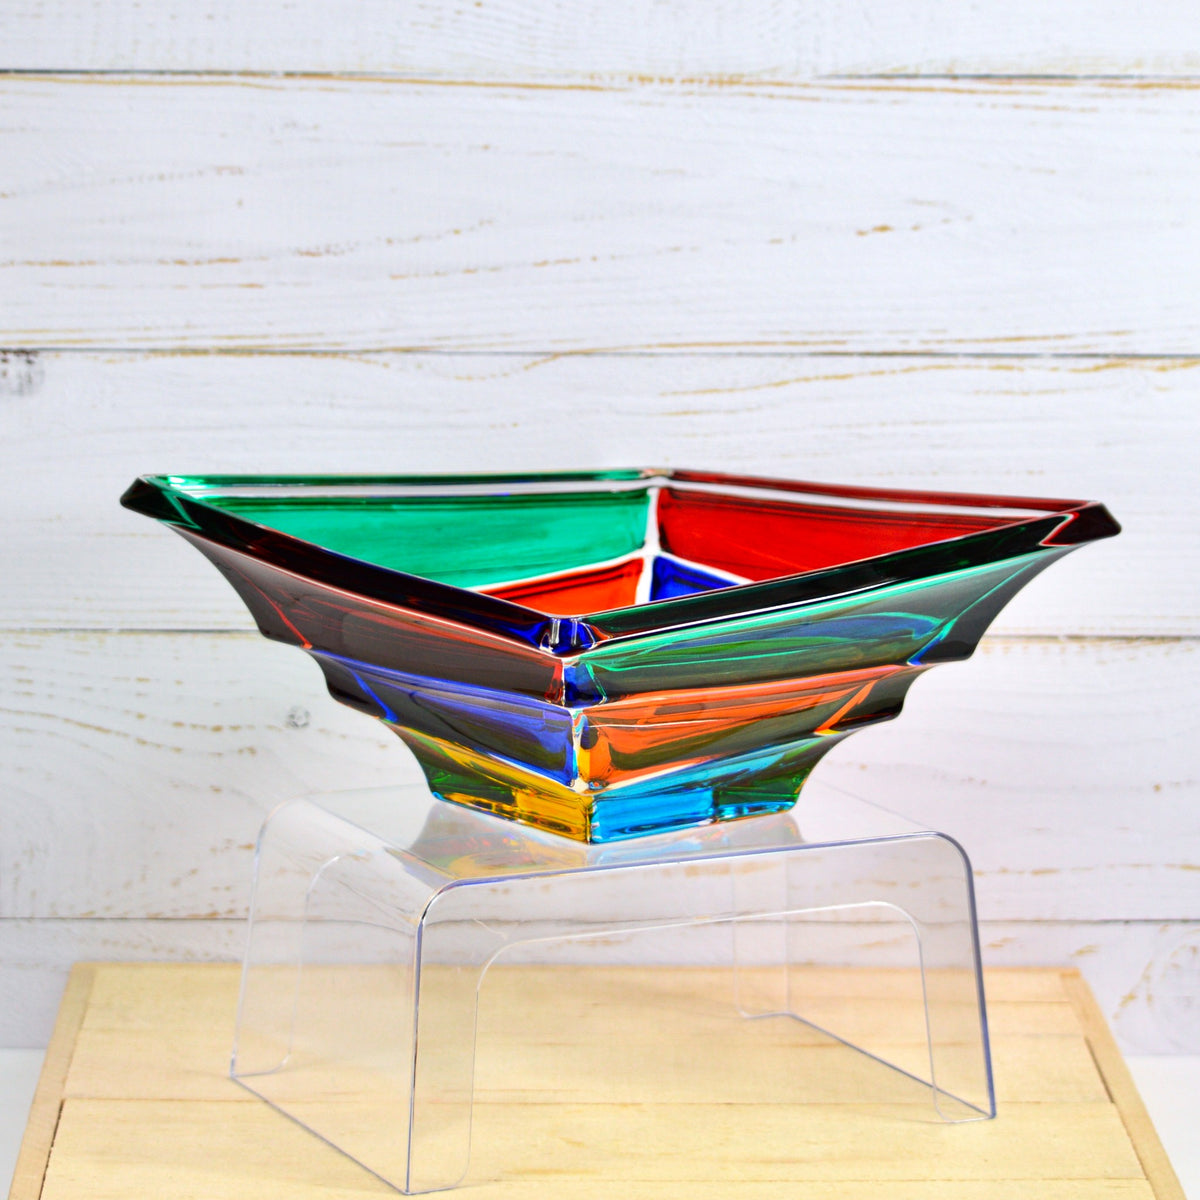 Vela Italian Crystal Centerpiece Bowl, Made in Italy - My Italian Decor